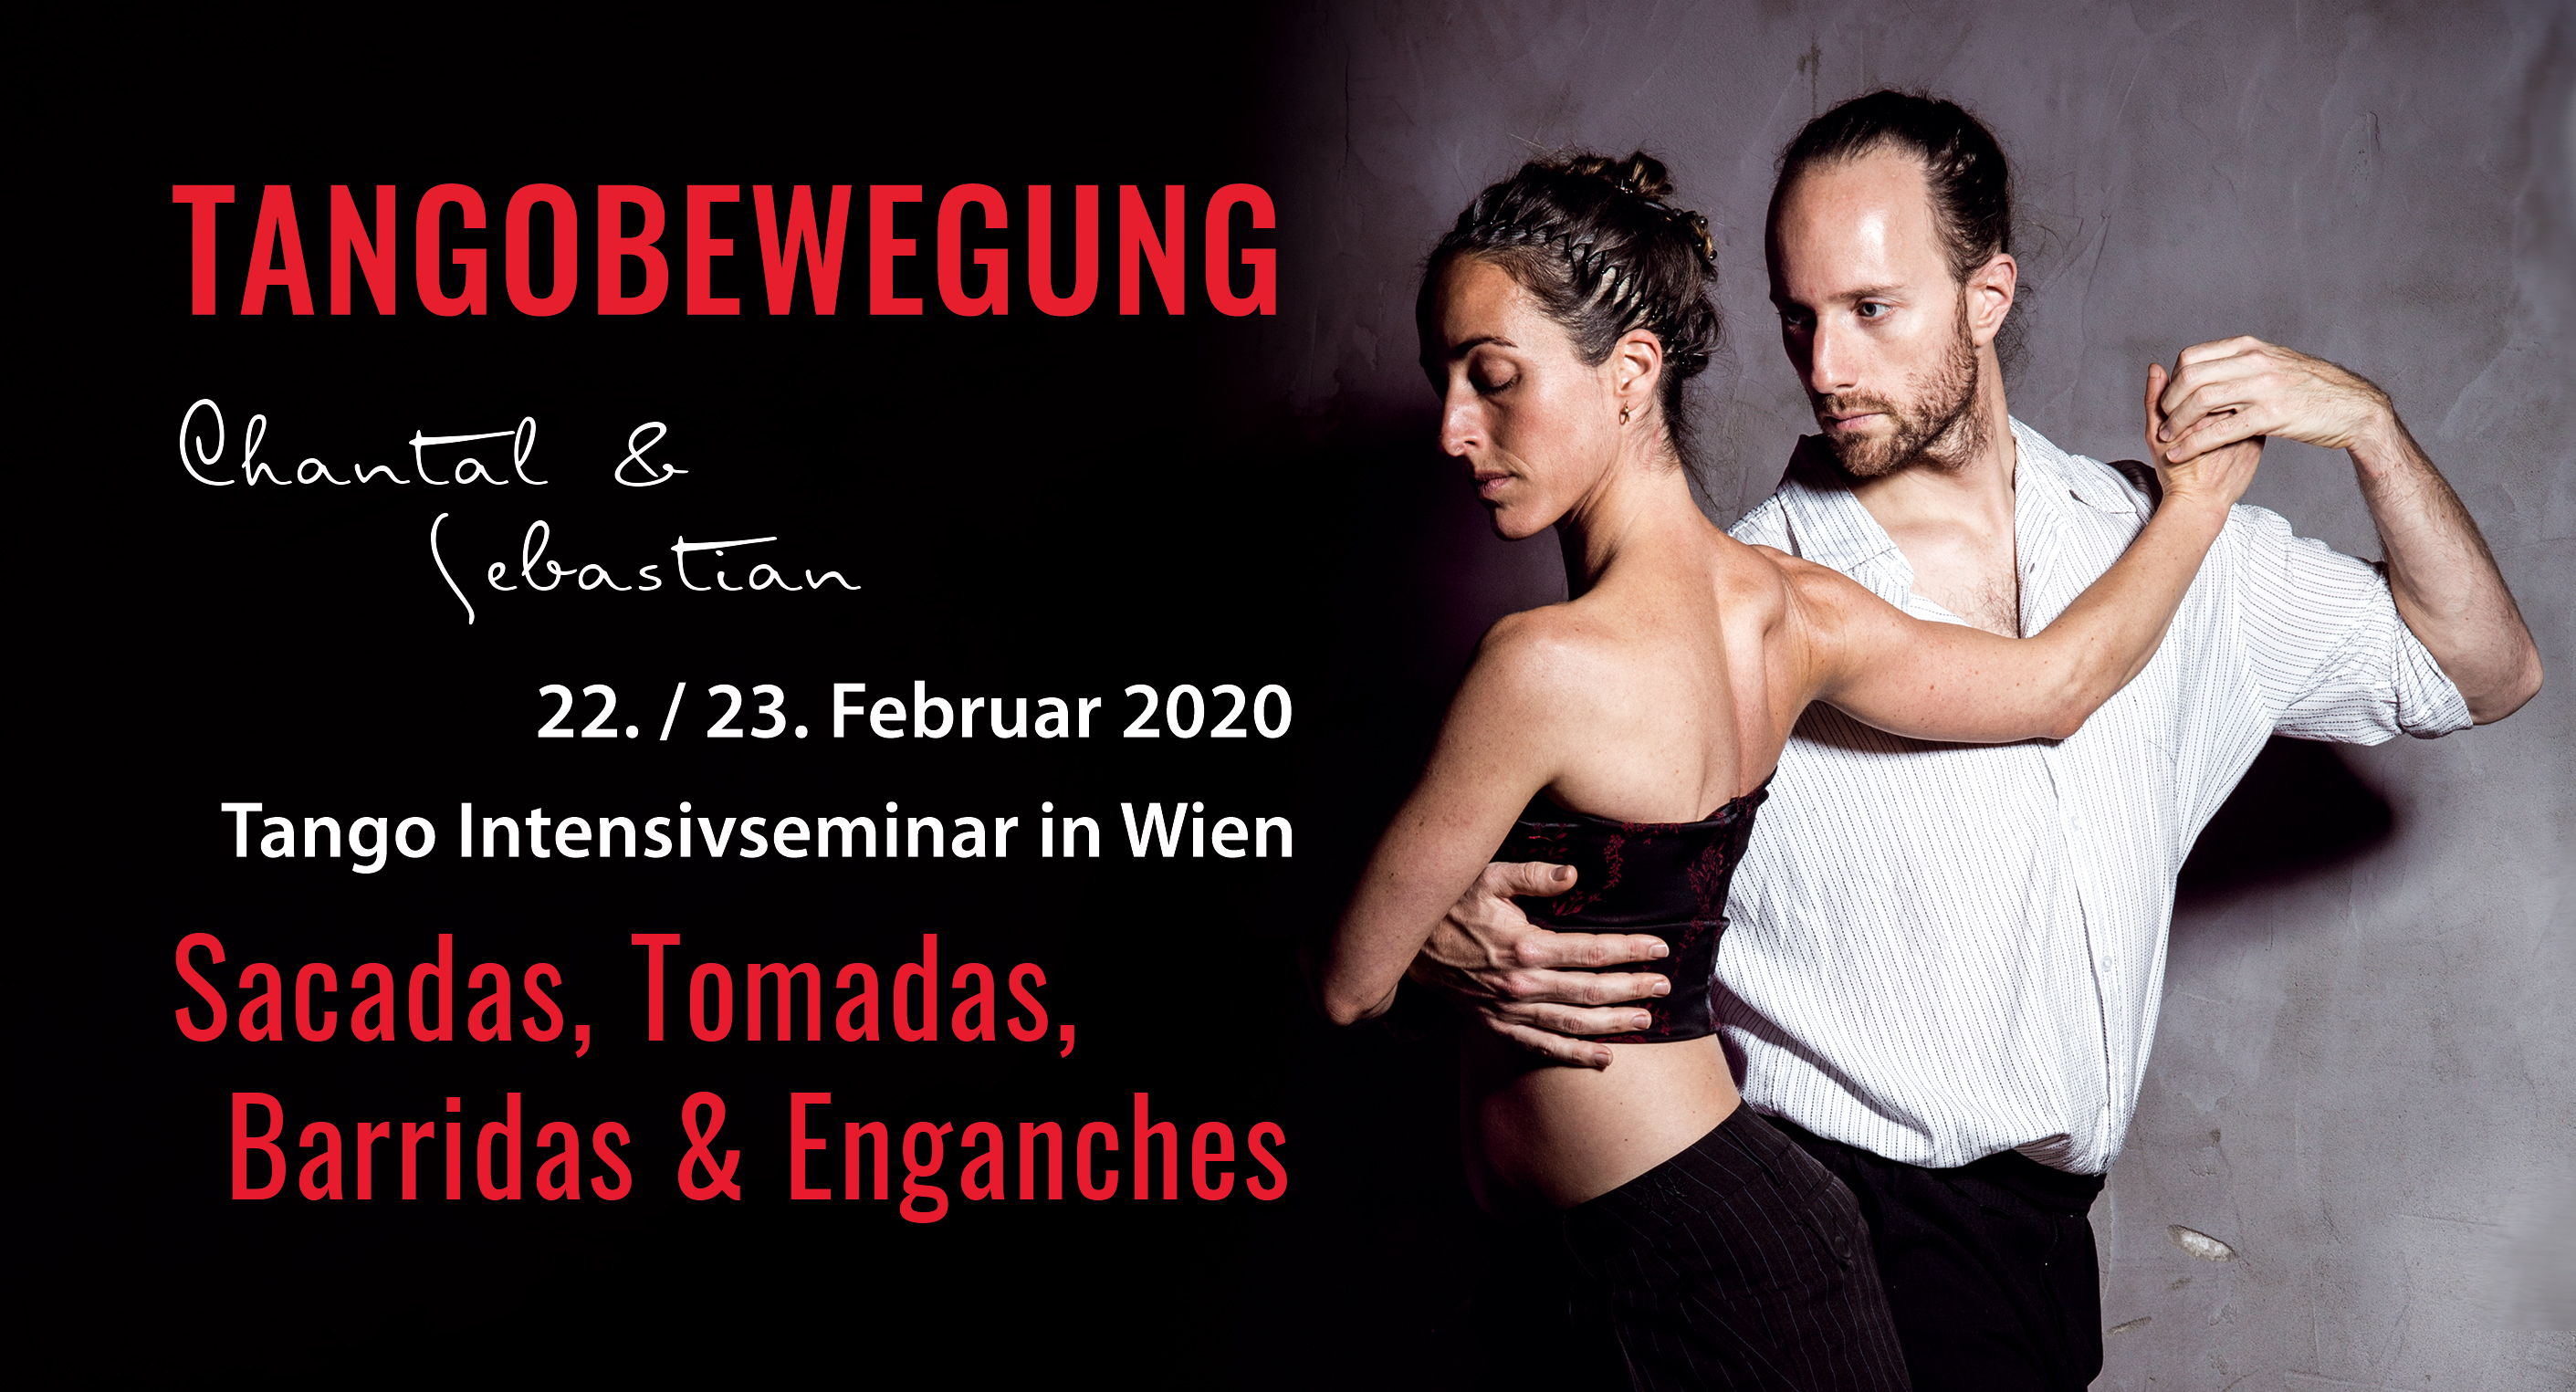 Tangobewegung Wien